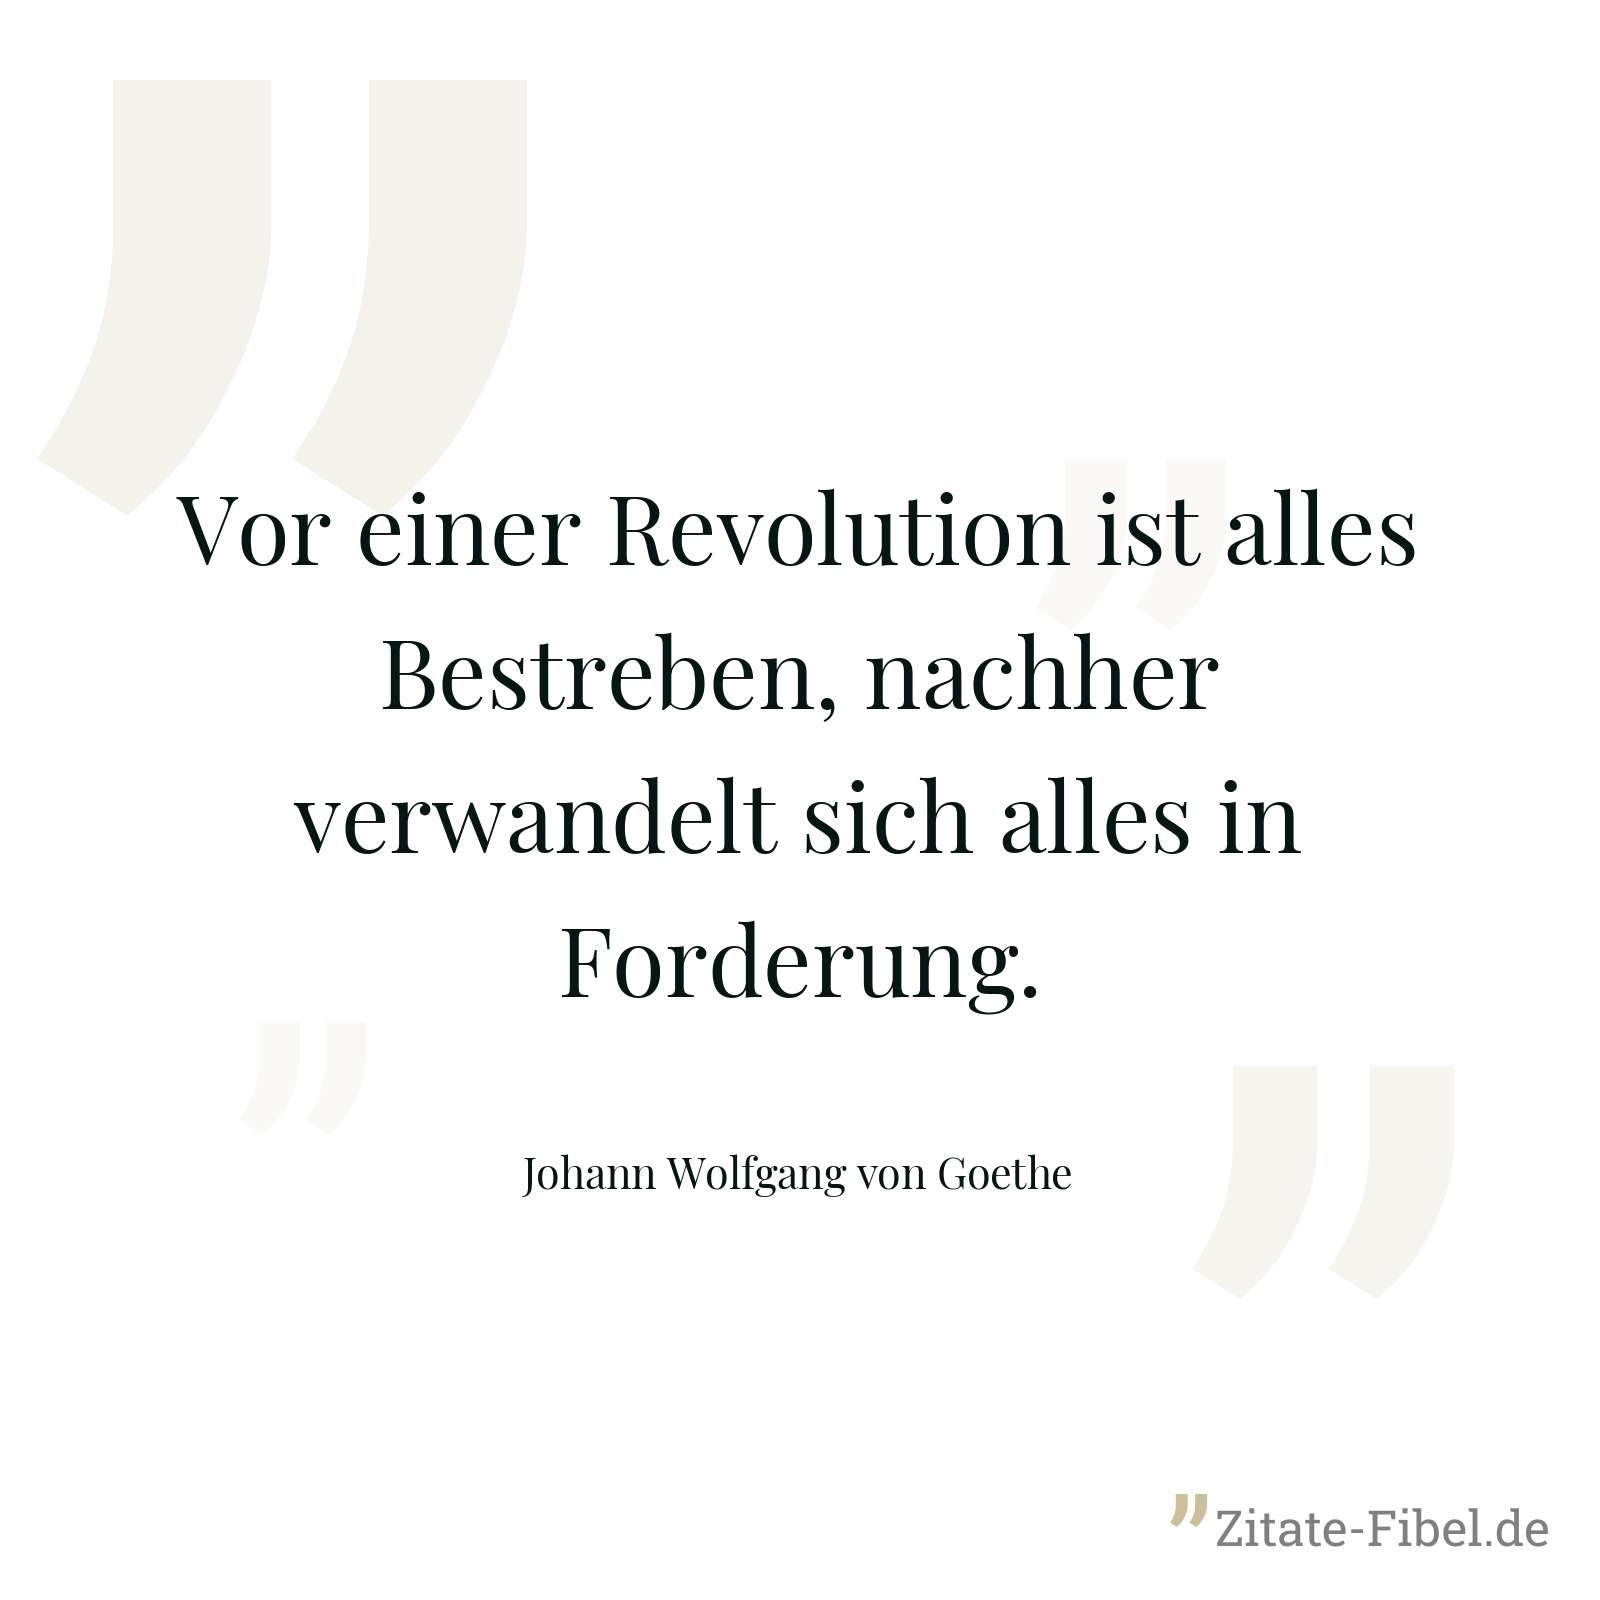 Vor einer Revolution ist alles Bestreben, nachher verwandelt sich alles in Forderung. - Johann Wolfgang von Goethe